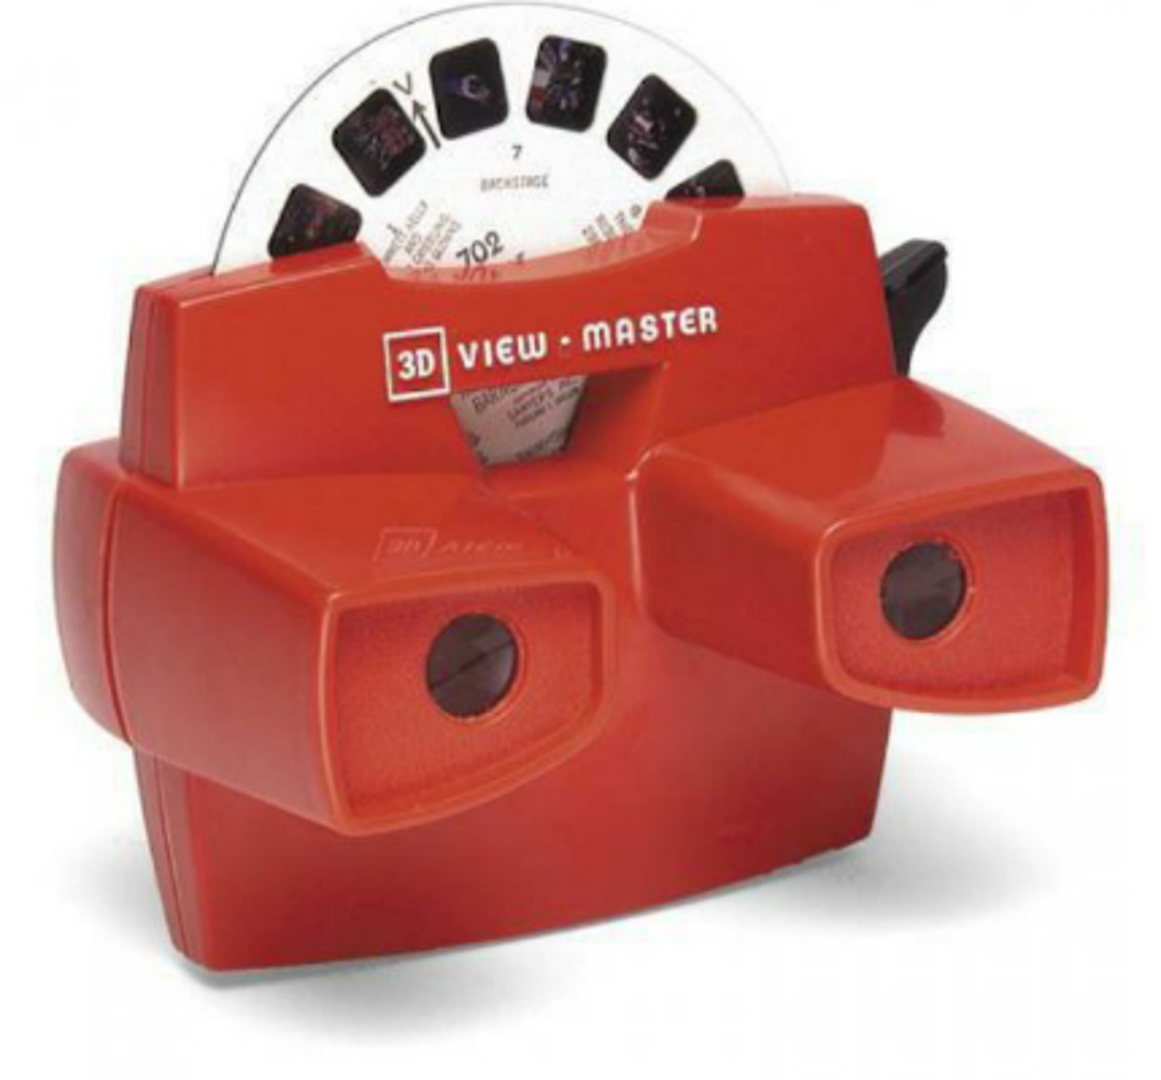 Ovako su izgledali 3D filmovi u djetinjstvu milenijalaca.